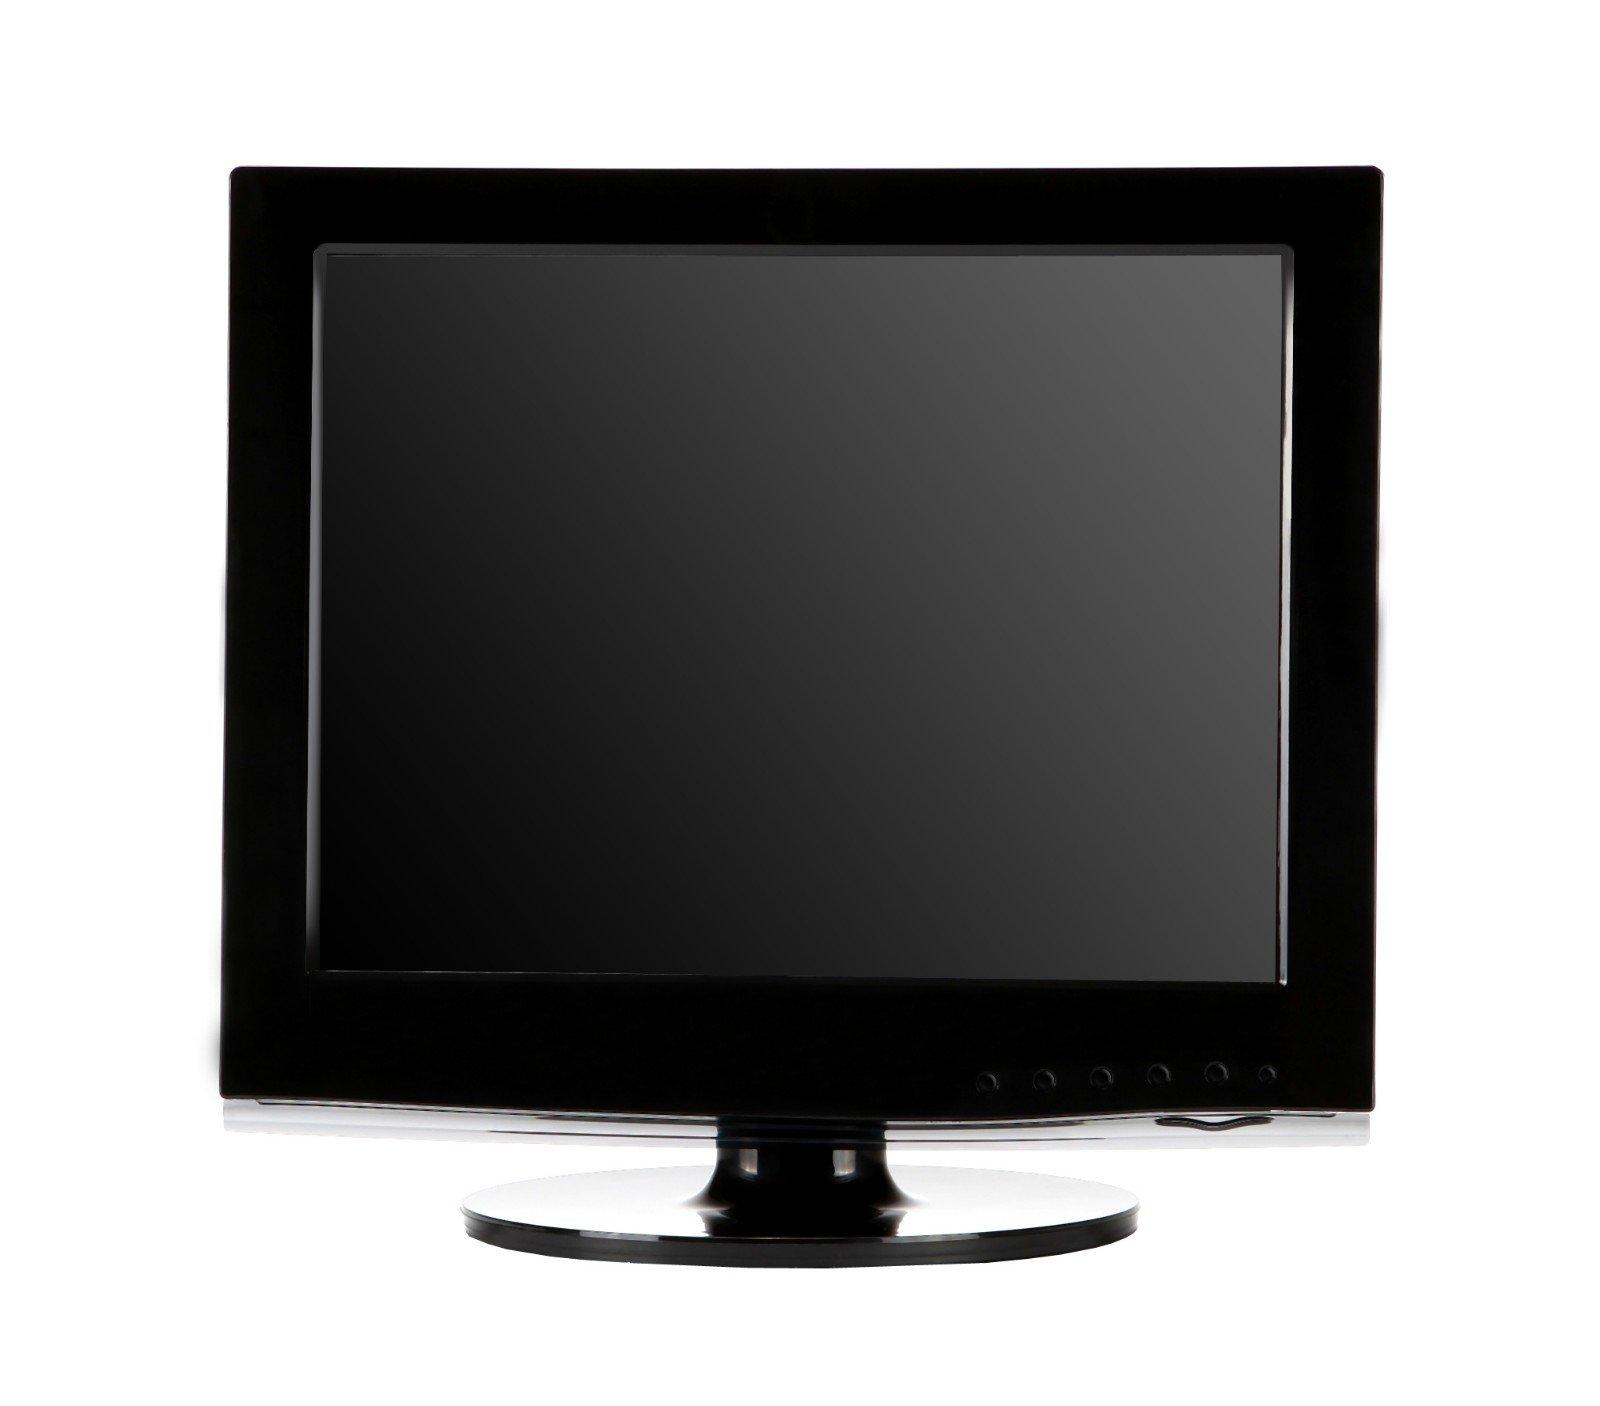 Hot 15 tft lcd monitor vga Xinyao LCD Brand